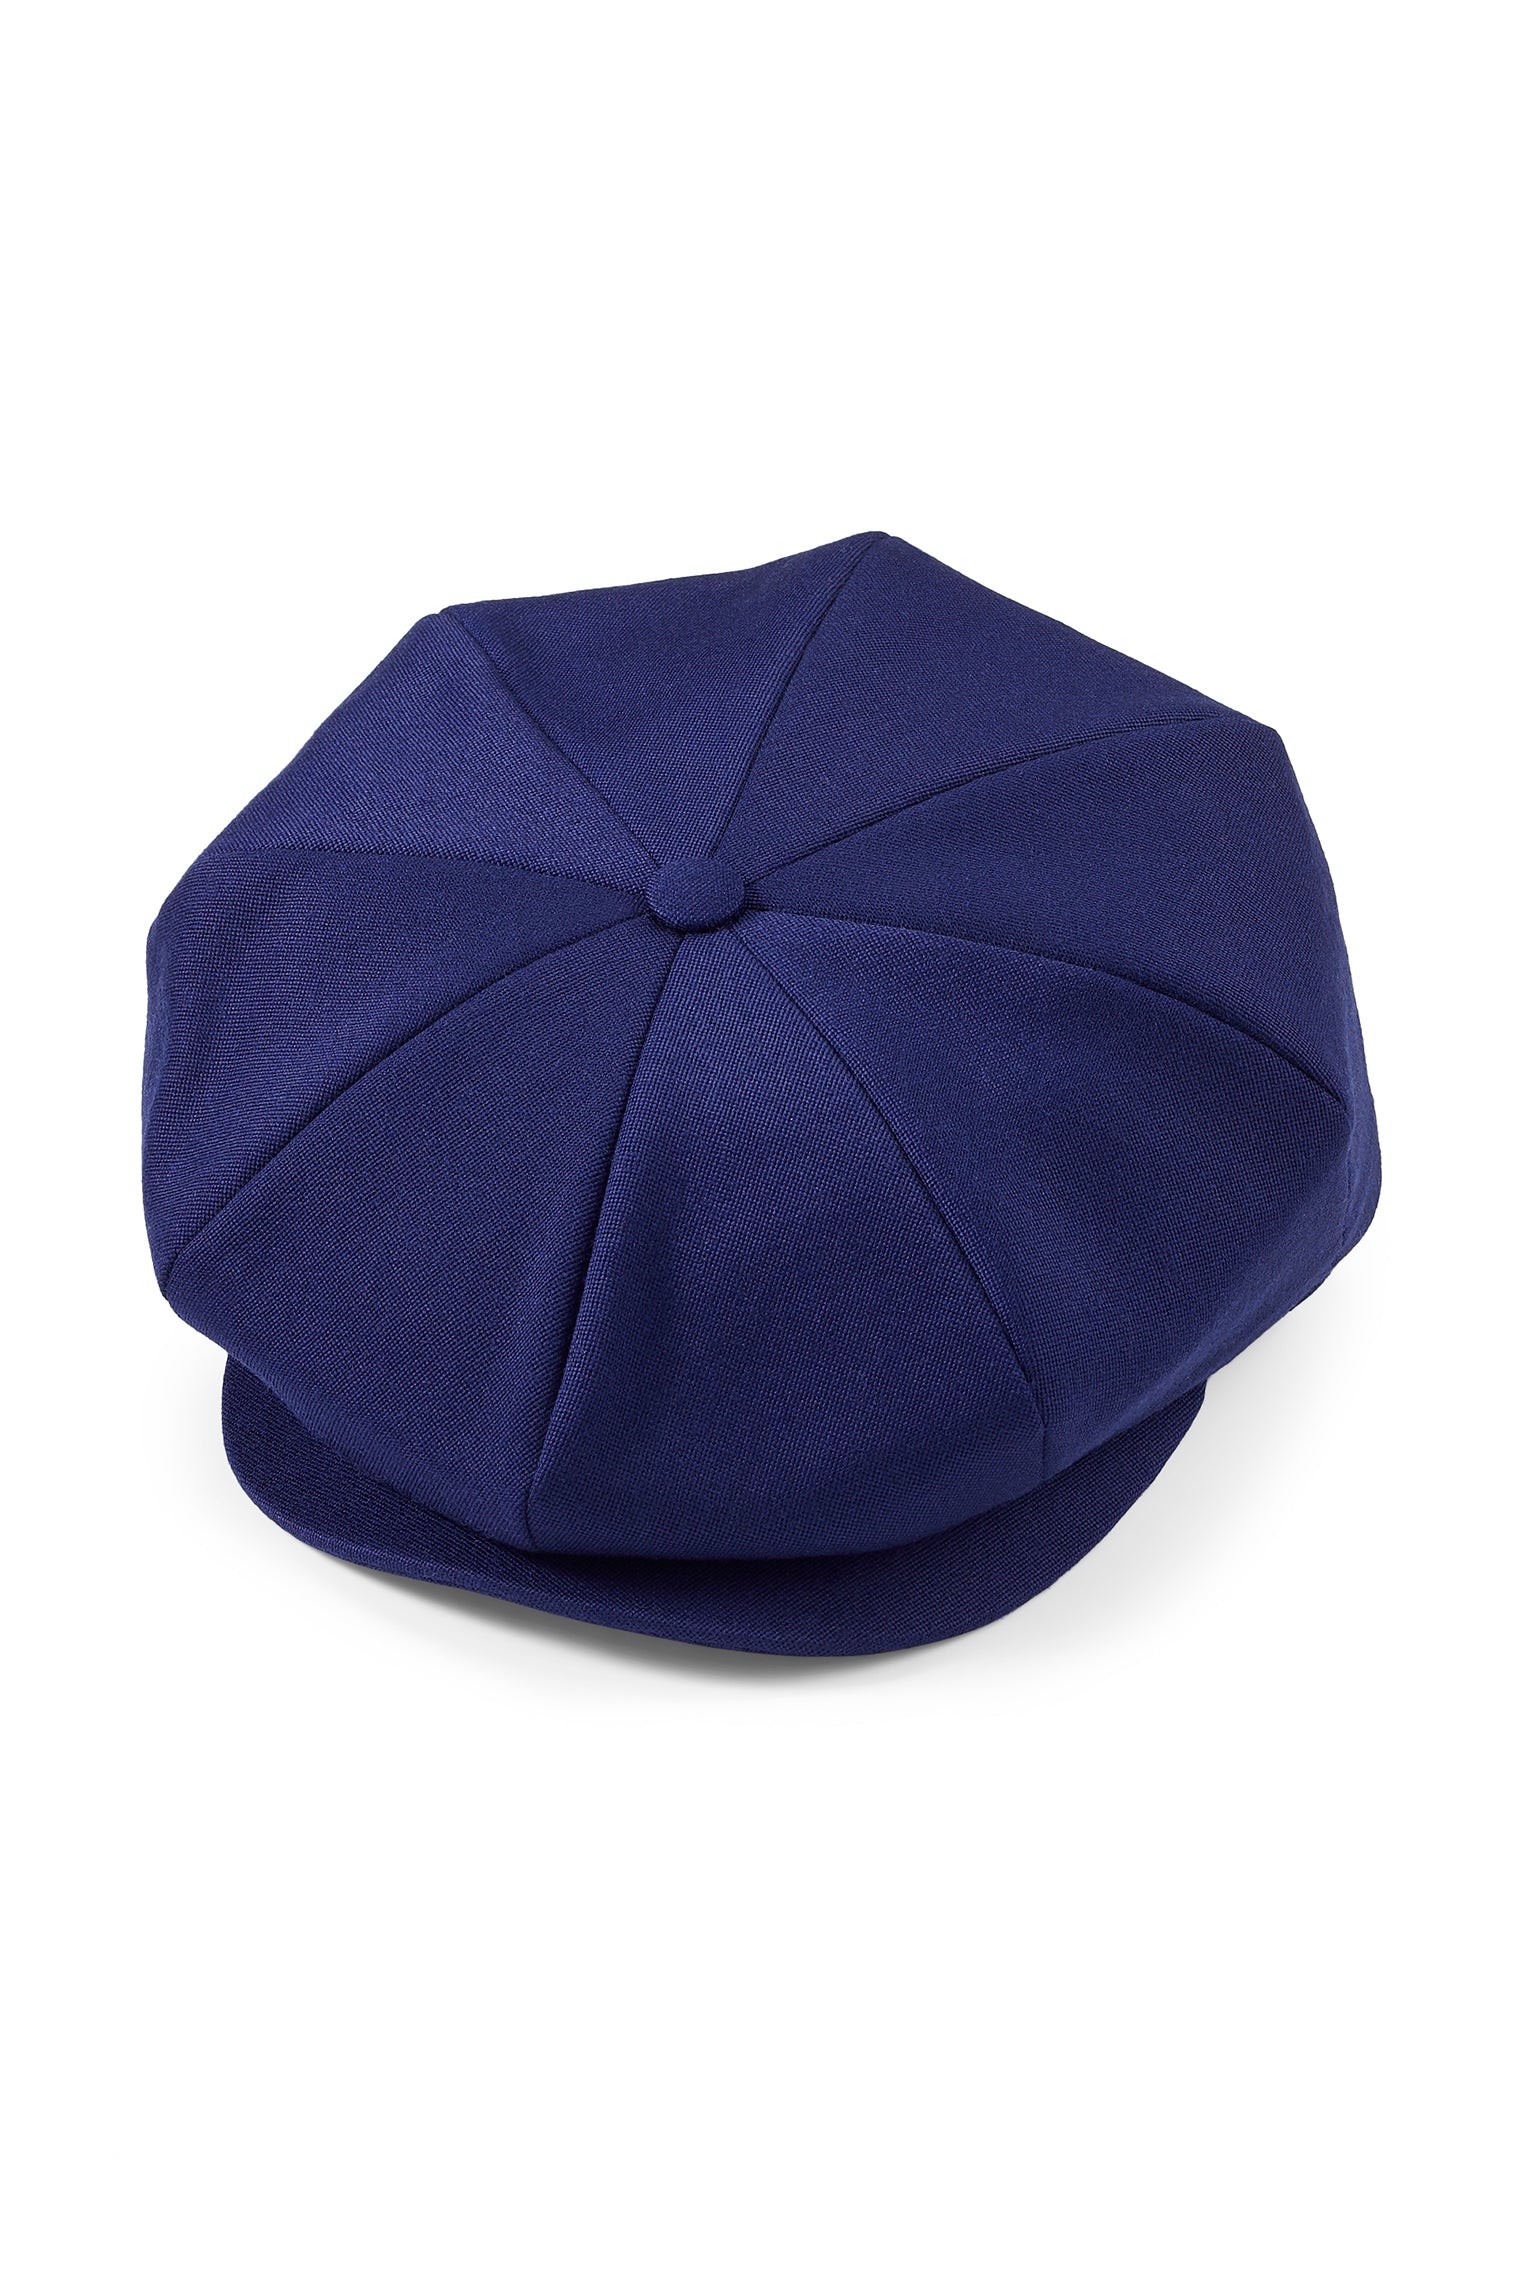 Tremelo Dark Blue Bakerboy Cap - Men's Hats - Lock & Co. Hatters London UK